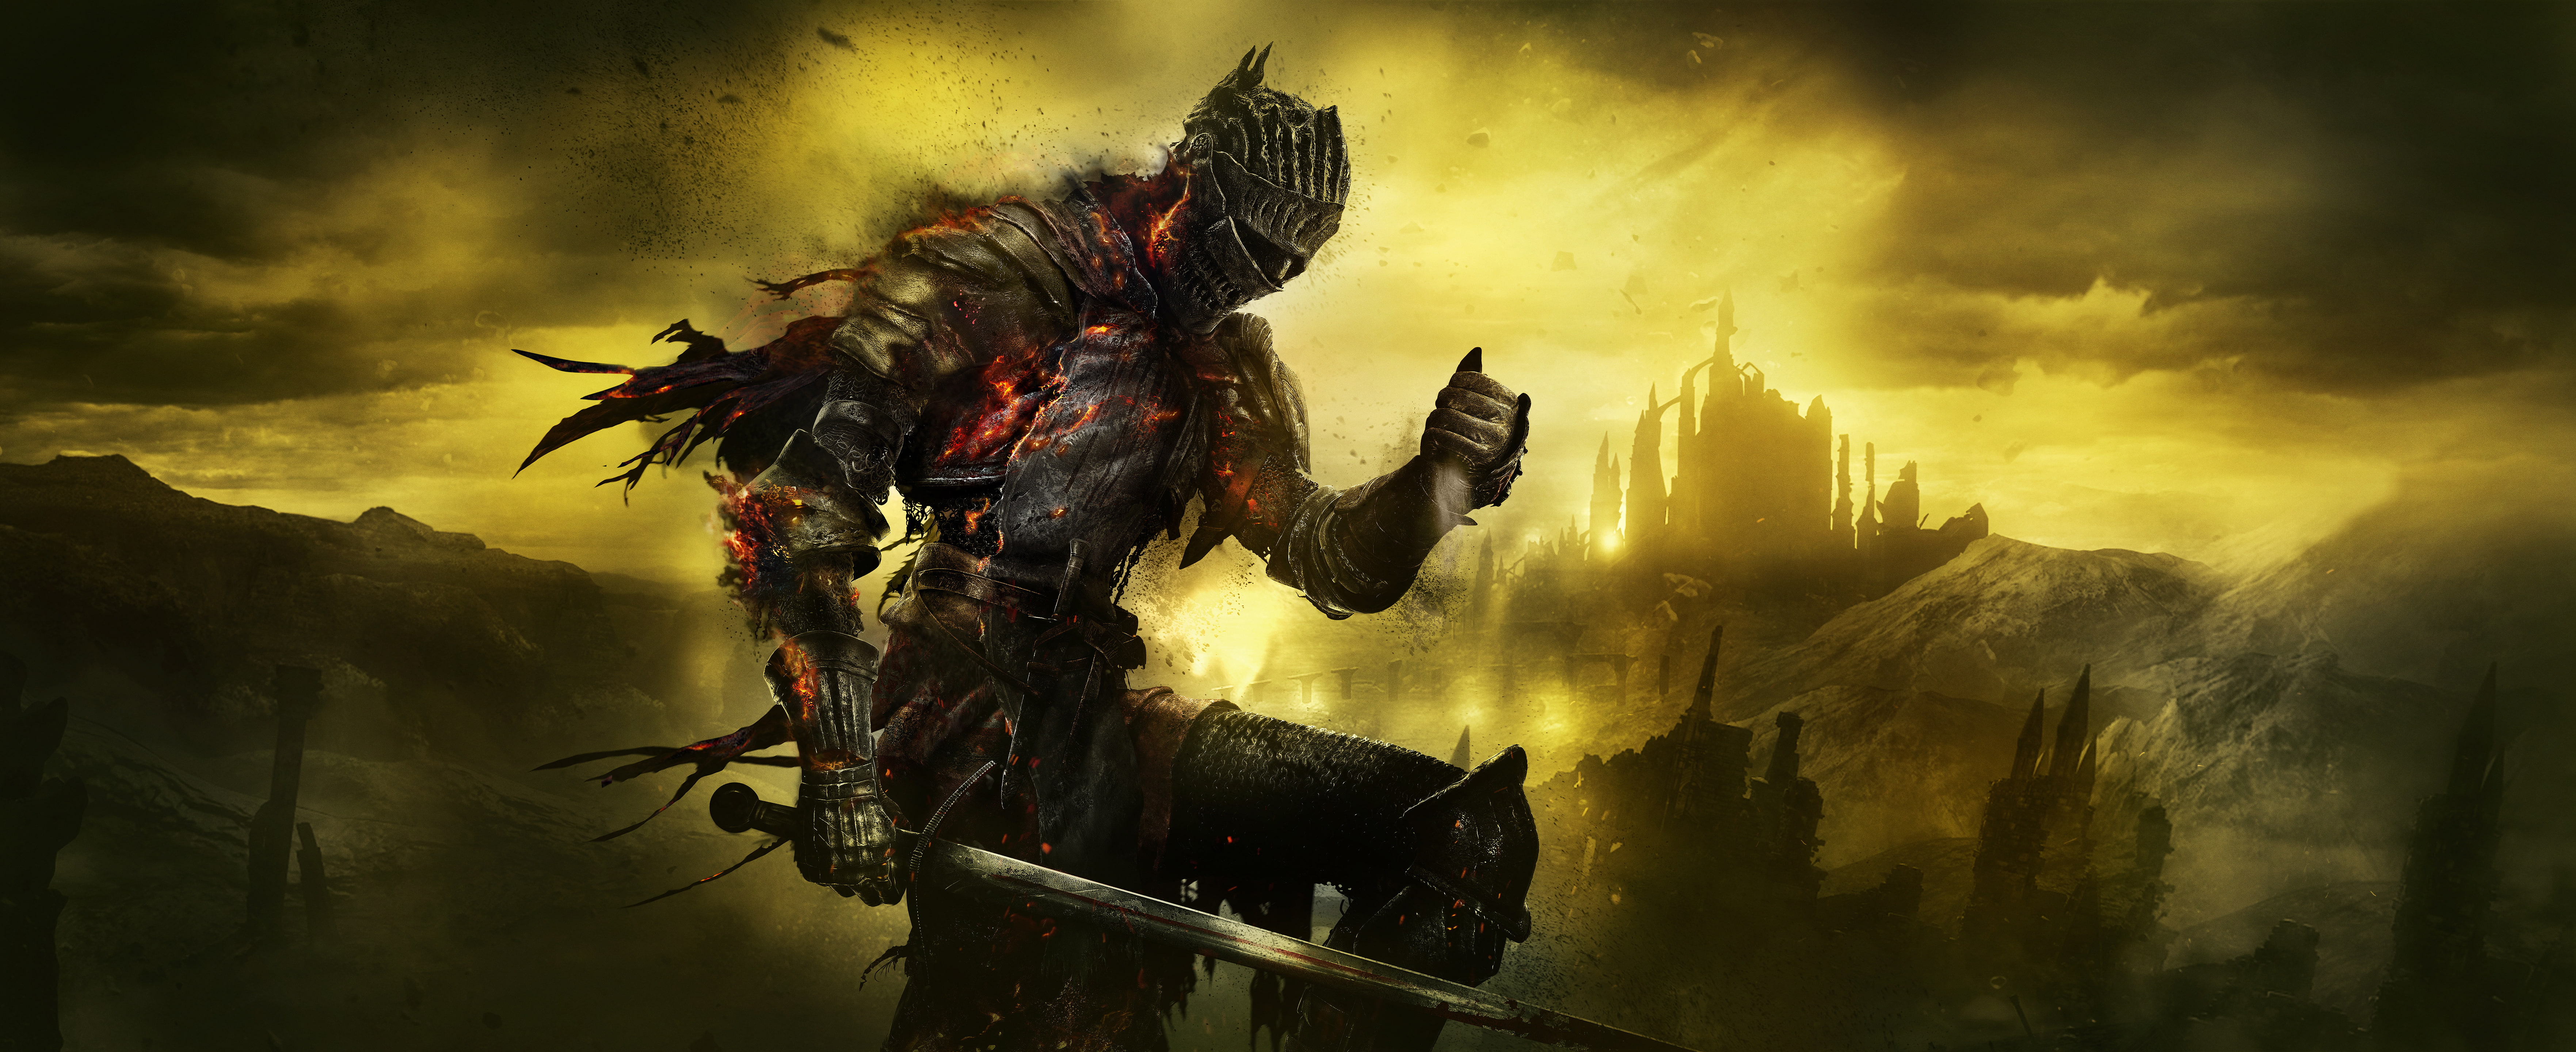 DarkSoul III game poster, Dark Souls III, Key art, 5K